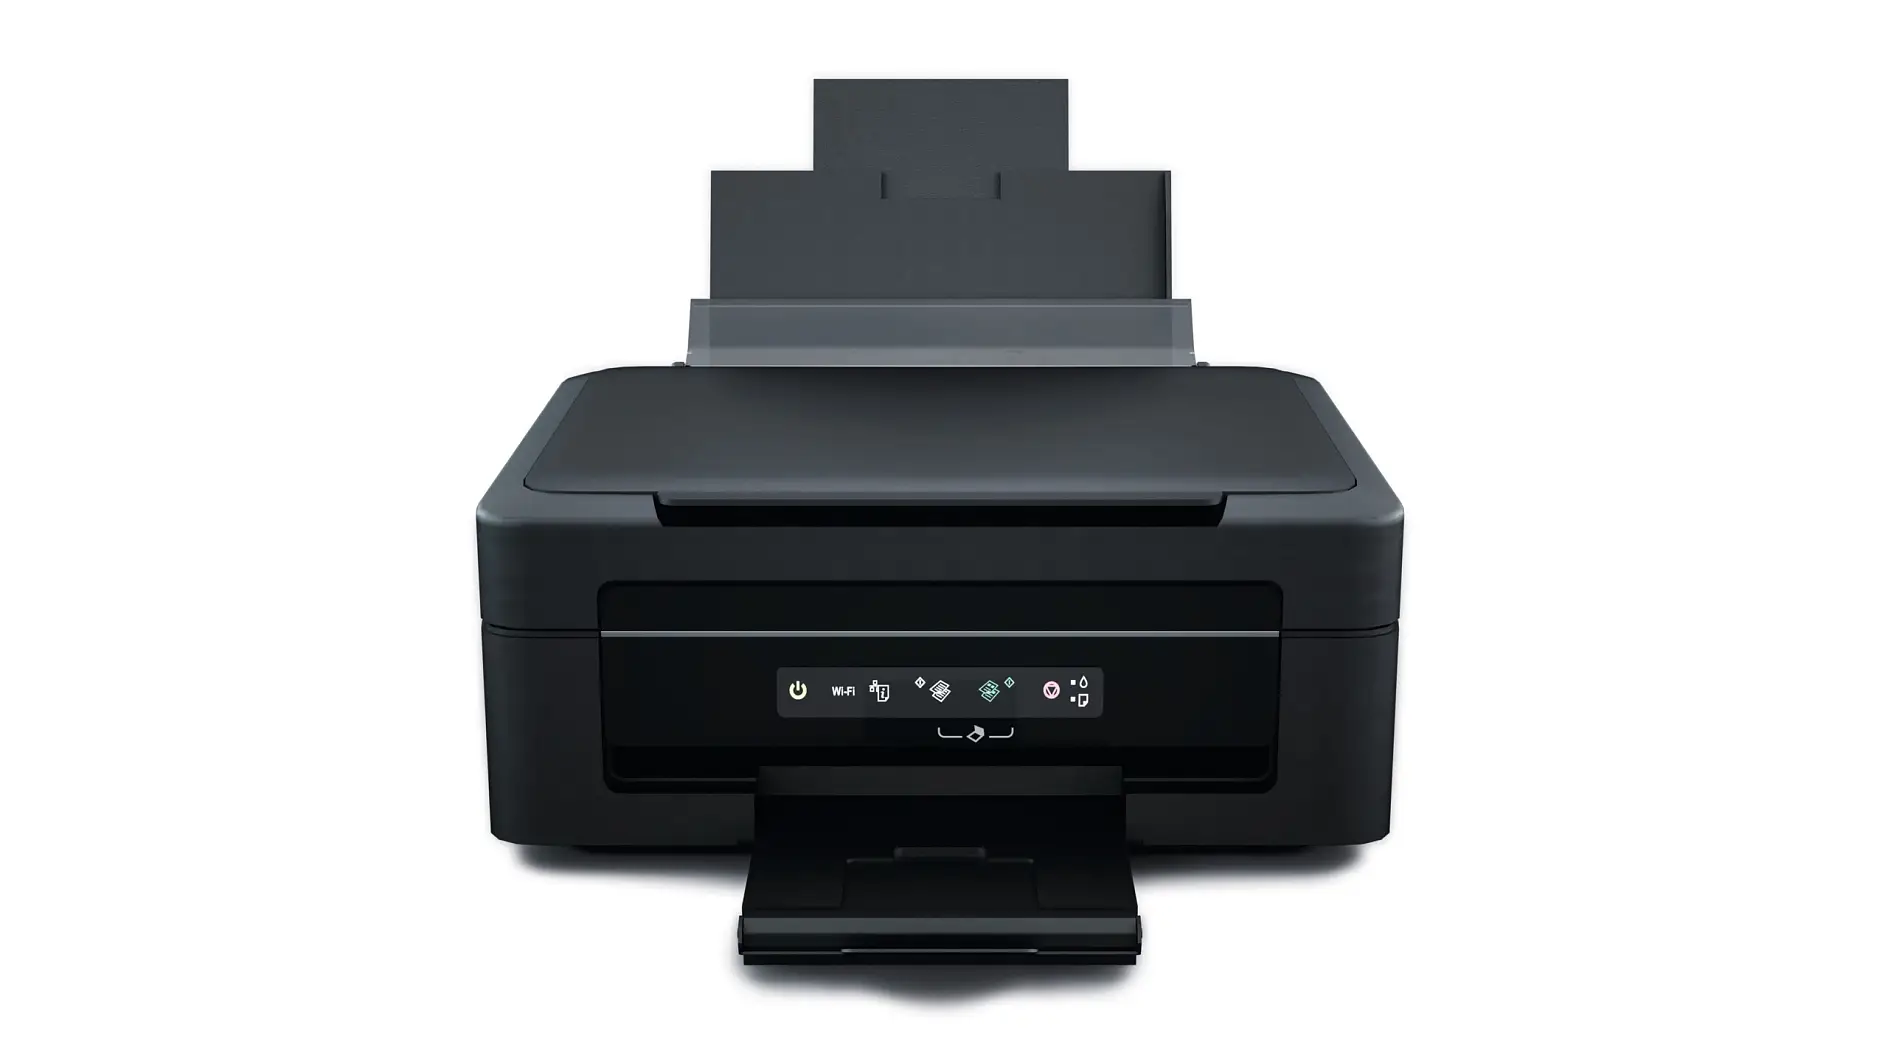 A többfunkciós nyomtatóknál különféle szalagos megoldások alkalmazhatók eltérő alkalmazások széles köréhez